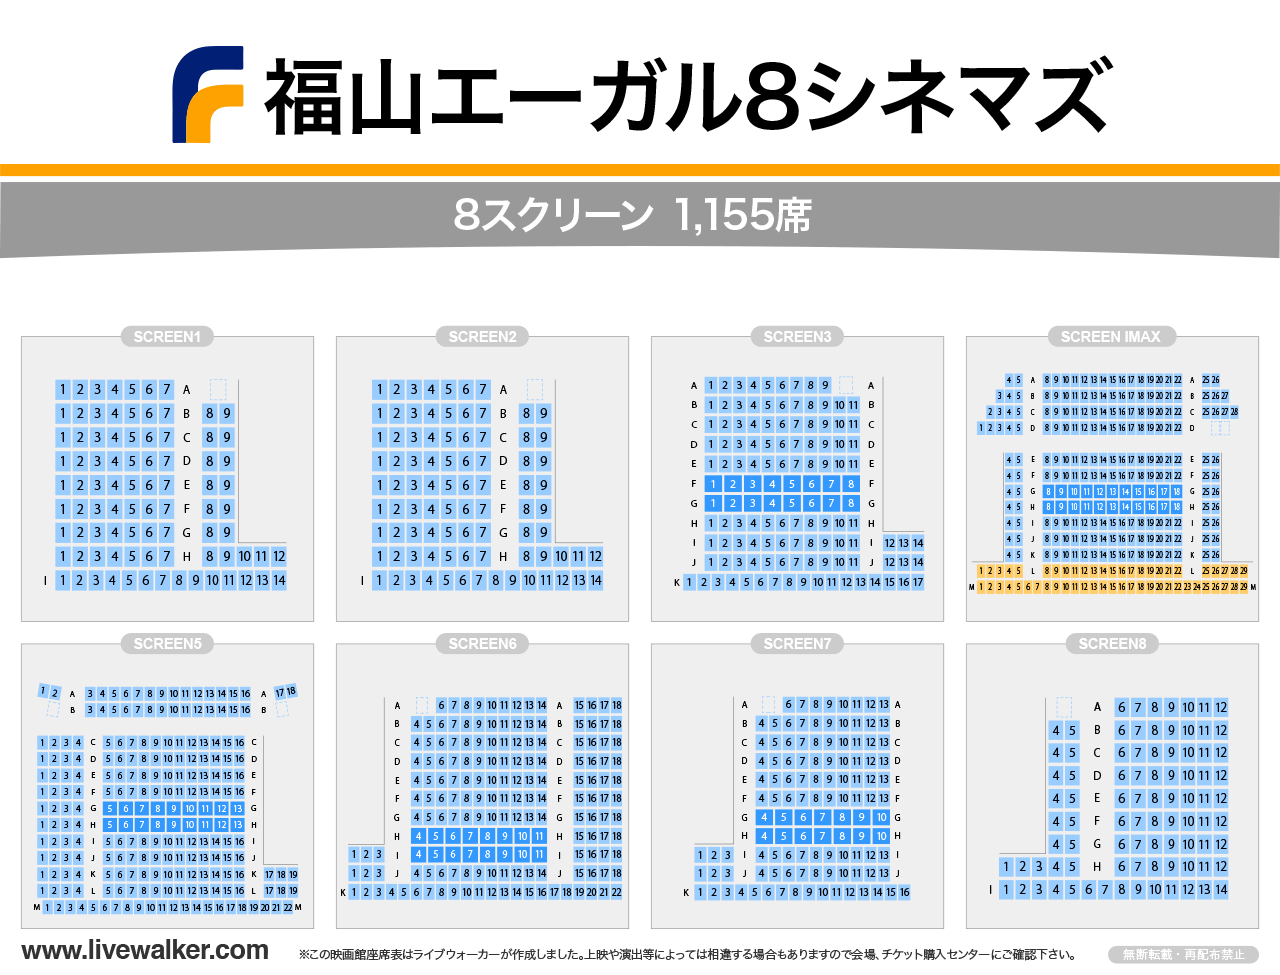 福山エーガル8シネマズシネマの座席表